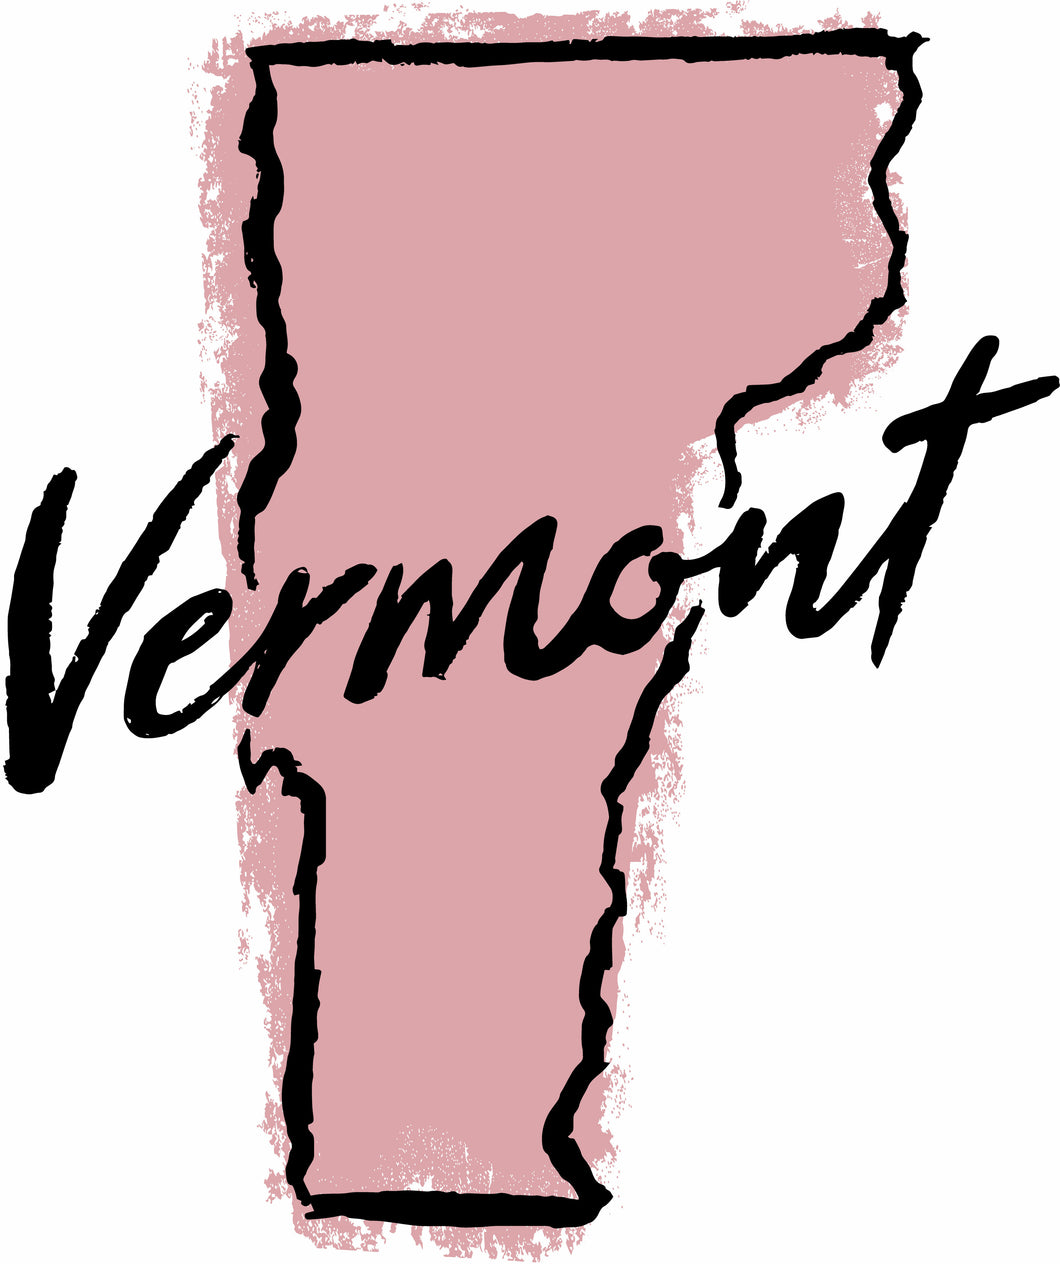 Vermont Good Standing Certificate